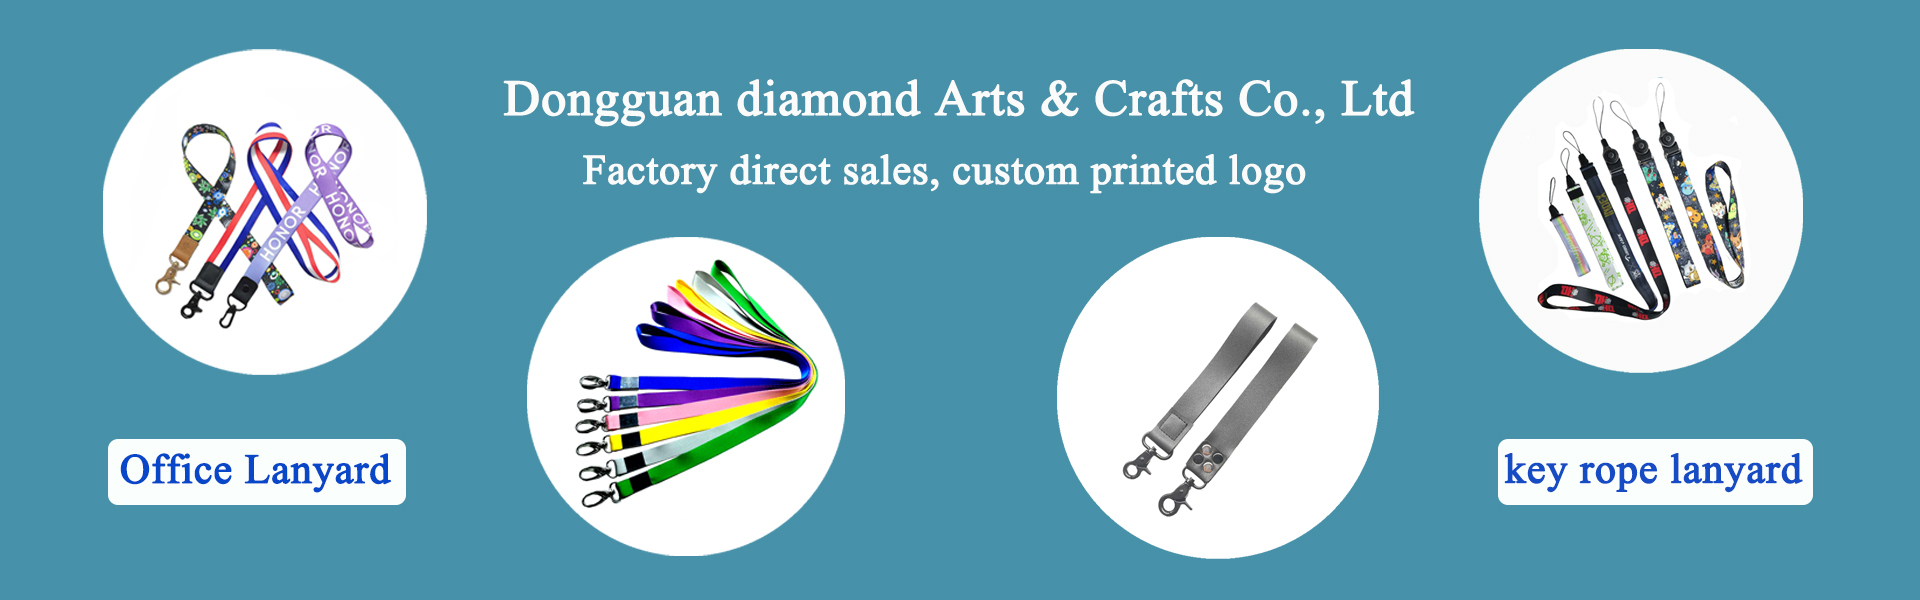 lanyard, accessori di abbigliamento, forniture per animali,Dongguan diamond Arts & Crafts Co., Ltd